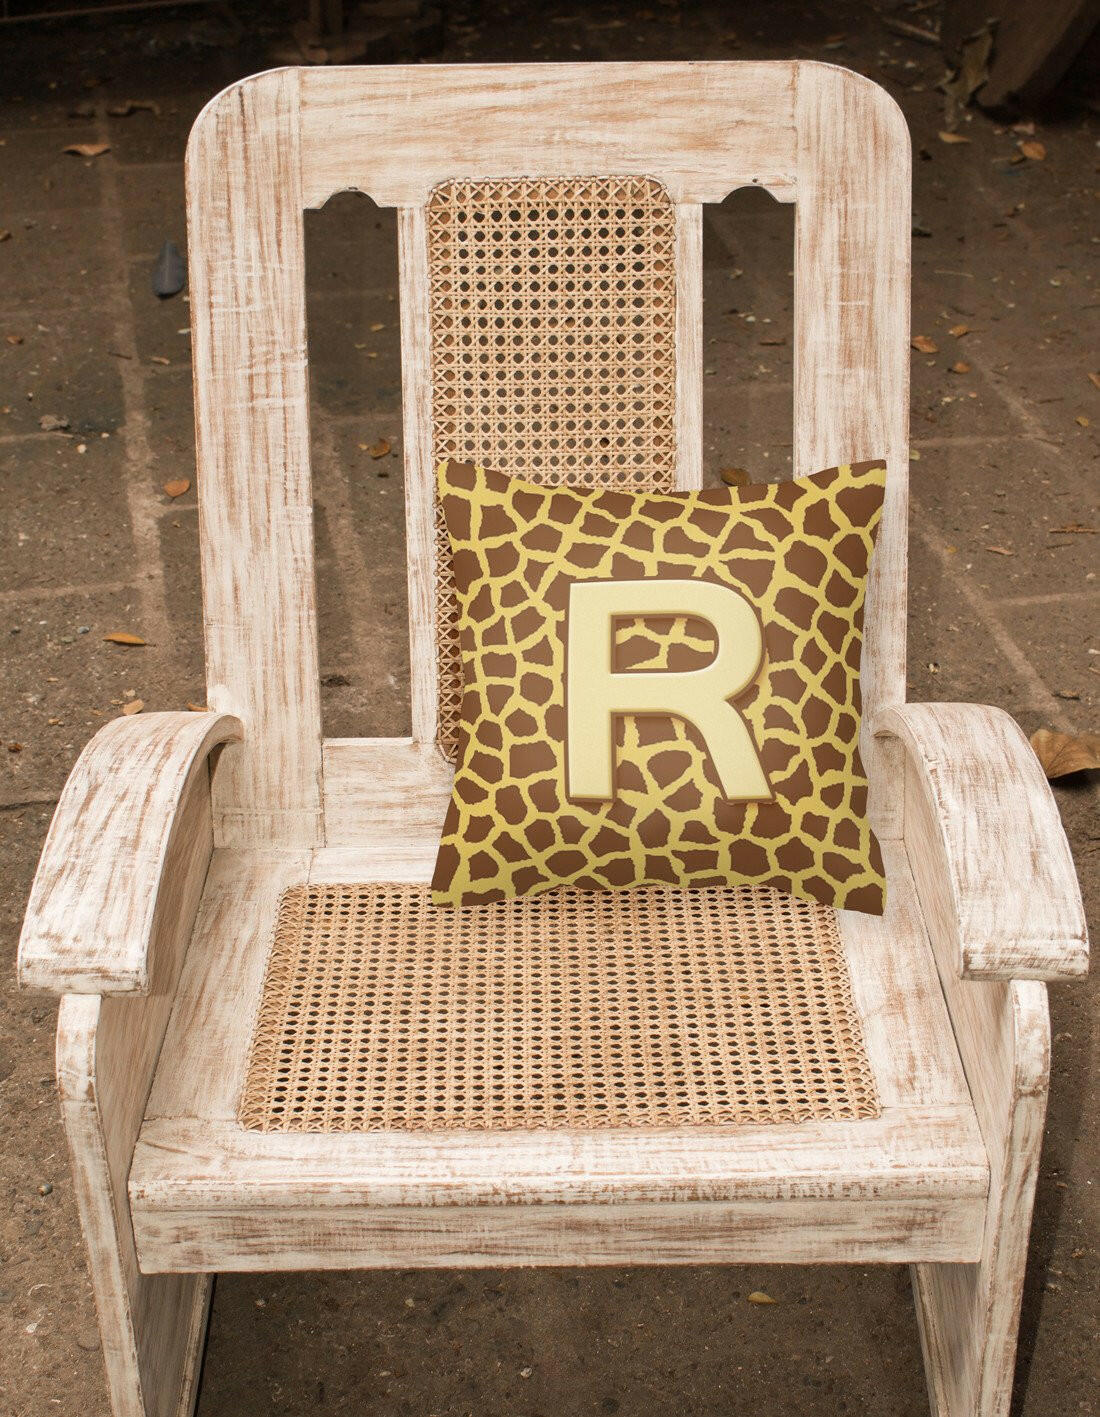 Monogram Initial R Giraffe Decorative   Canvas Fabric Pillow CJ1025 - the-store.com